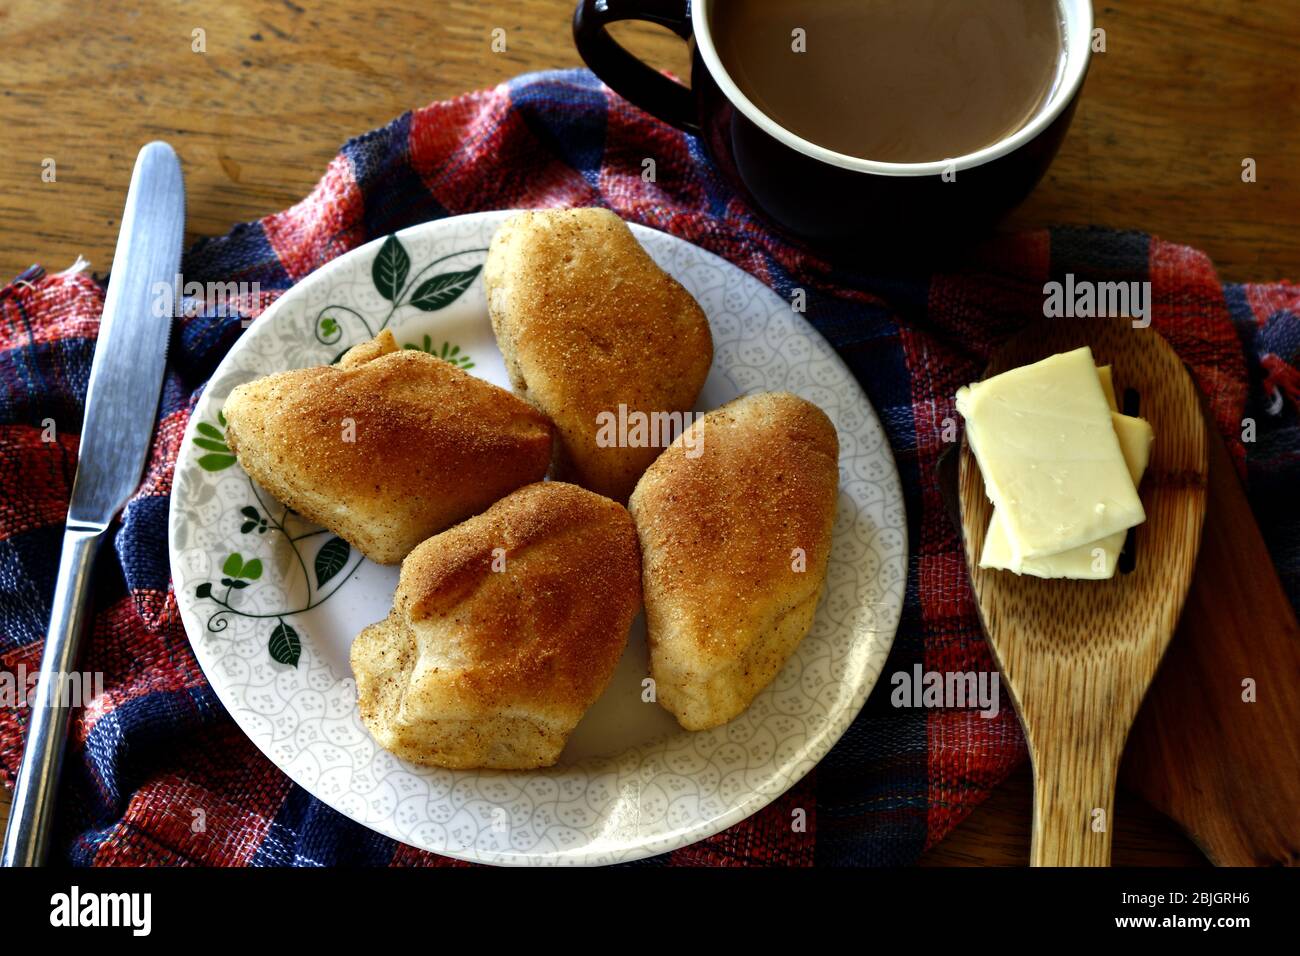 Photo de pain philippin fraîchement cuit appelé Pan de sal ou pain de sel, café et tranches de fromage sur une table. Banque D'Images